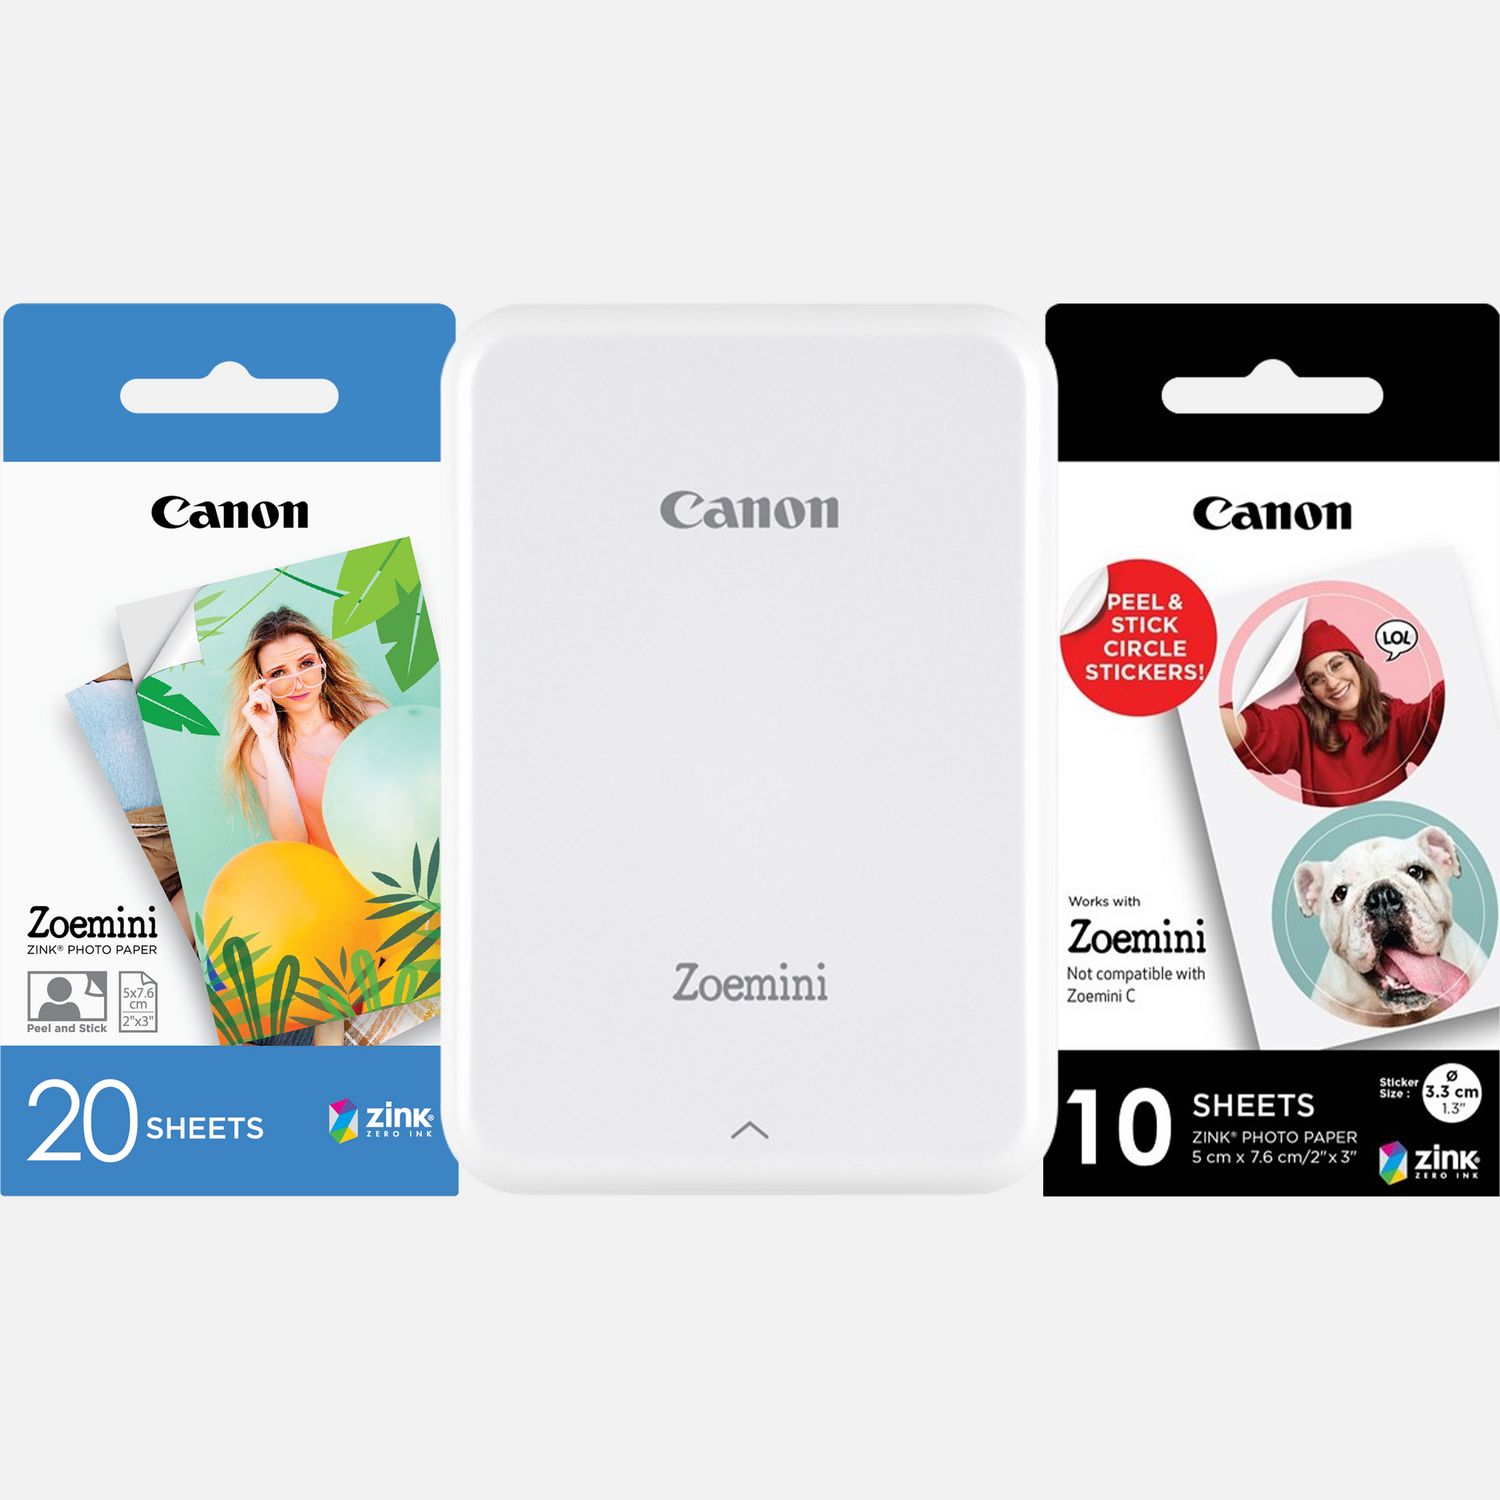 Image of Fotocamera istantanea a colori portatile Canon Zoemini, bianca + 20 fogli di carta fotografica 2 x 3" + 10 fogli di carta adesiva a tondini